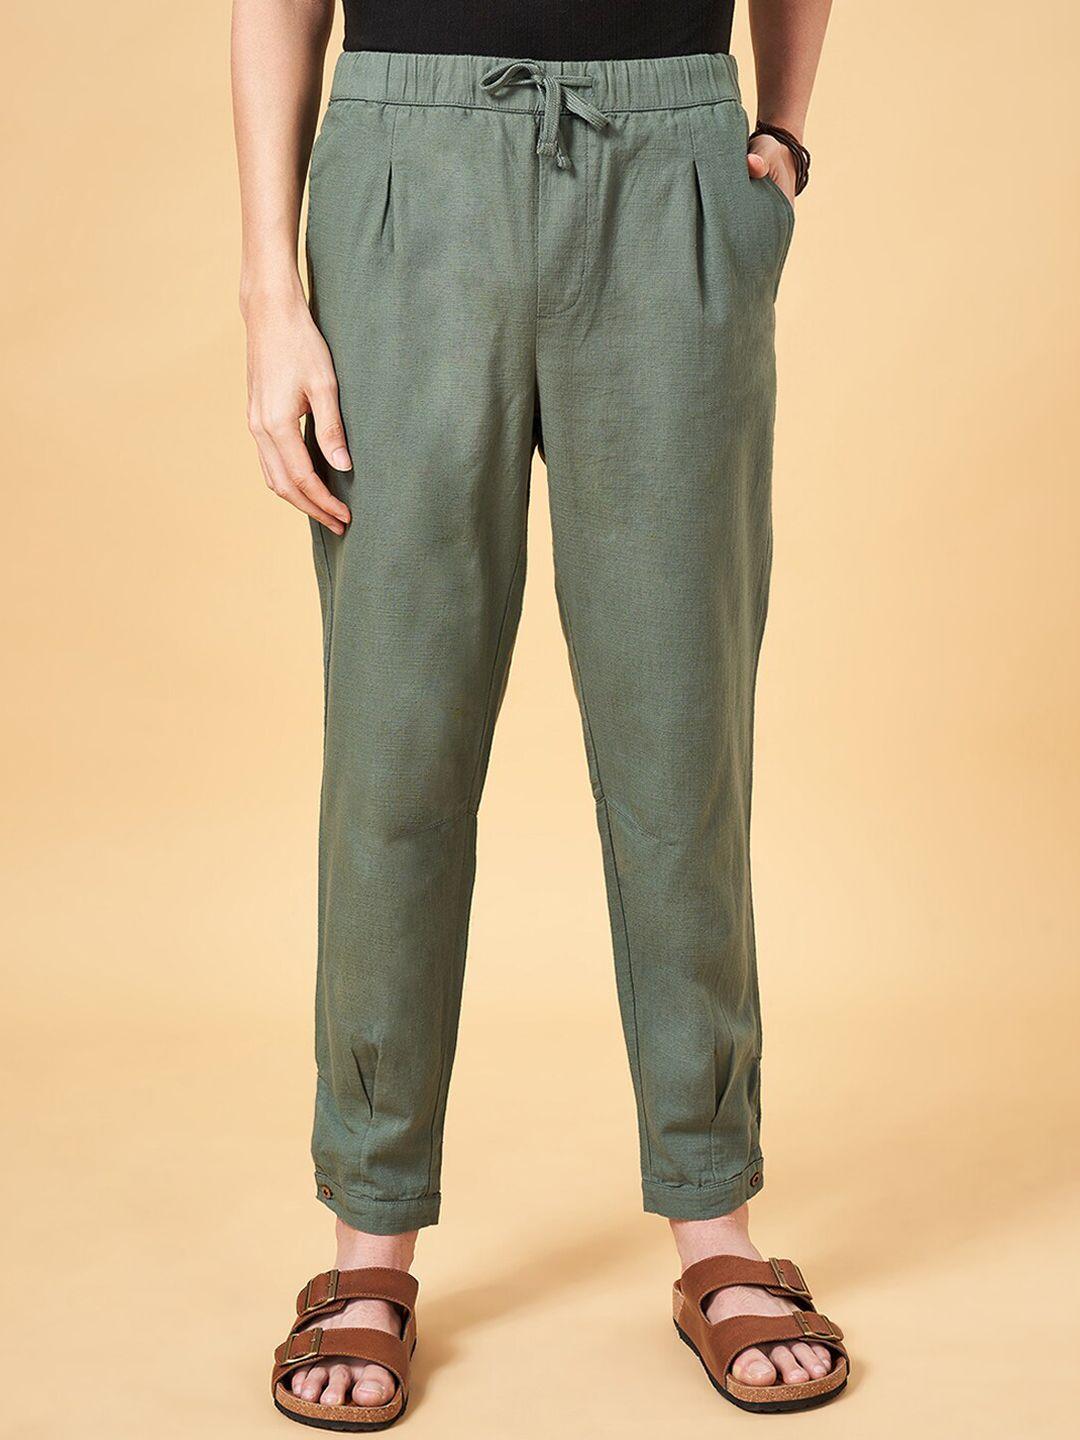 7-alt-by-pantaloons-men-regular-fit-mid-rise-plain-cotton-trousers